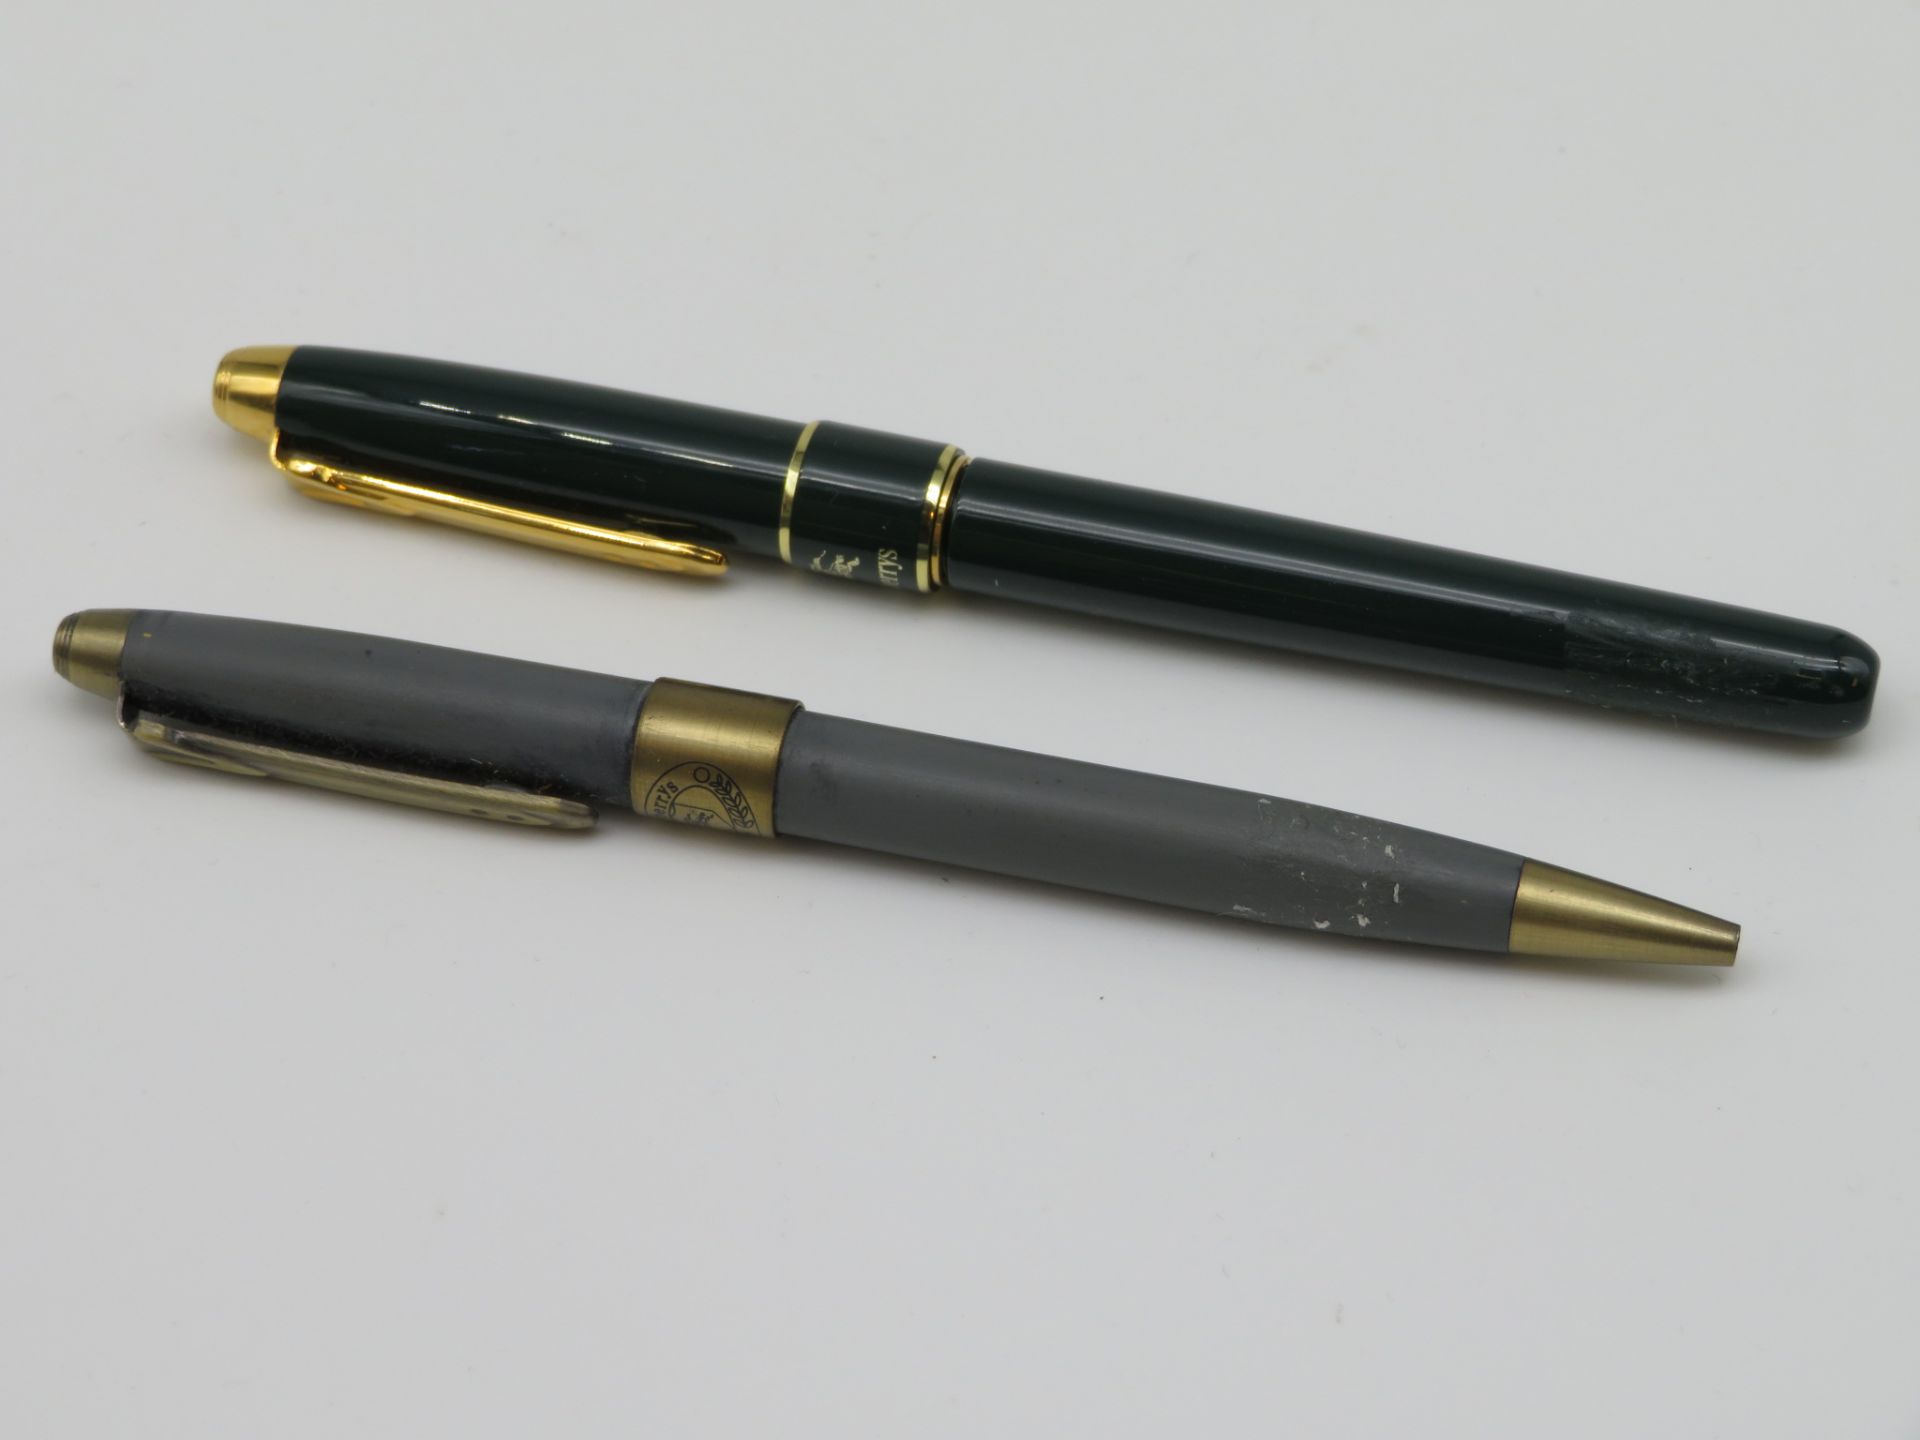 Füllfederhalter und Kugelschreiber, Burberrys, Funktionsfähigkeit nicht geprüft, l 13,5 cm.